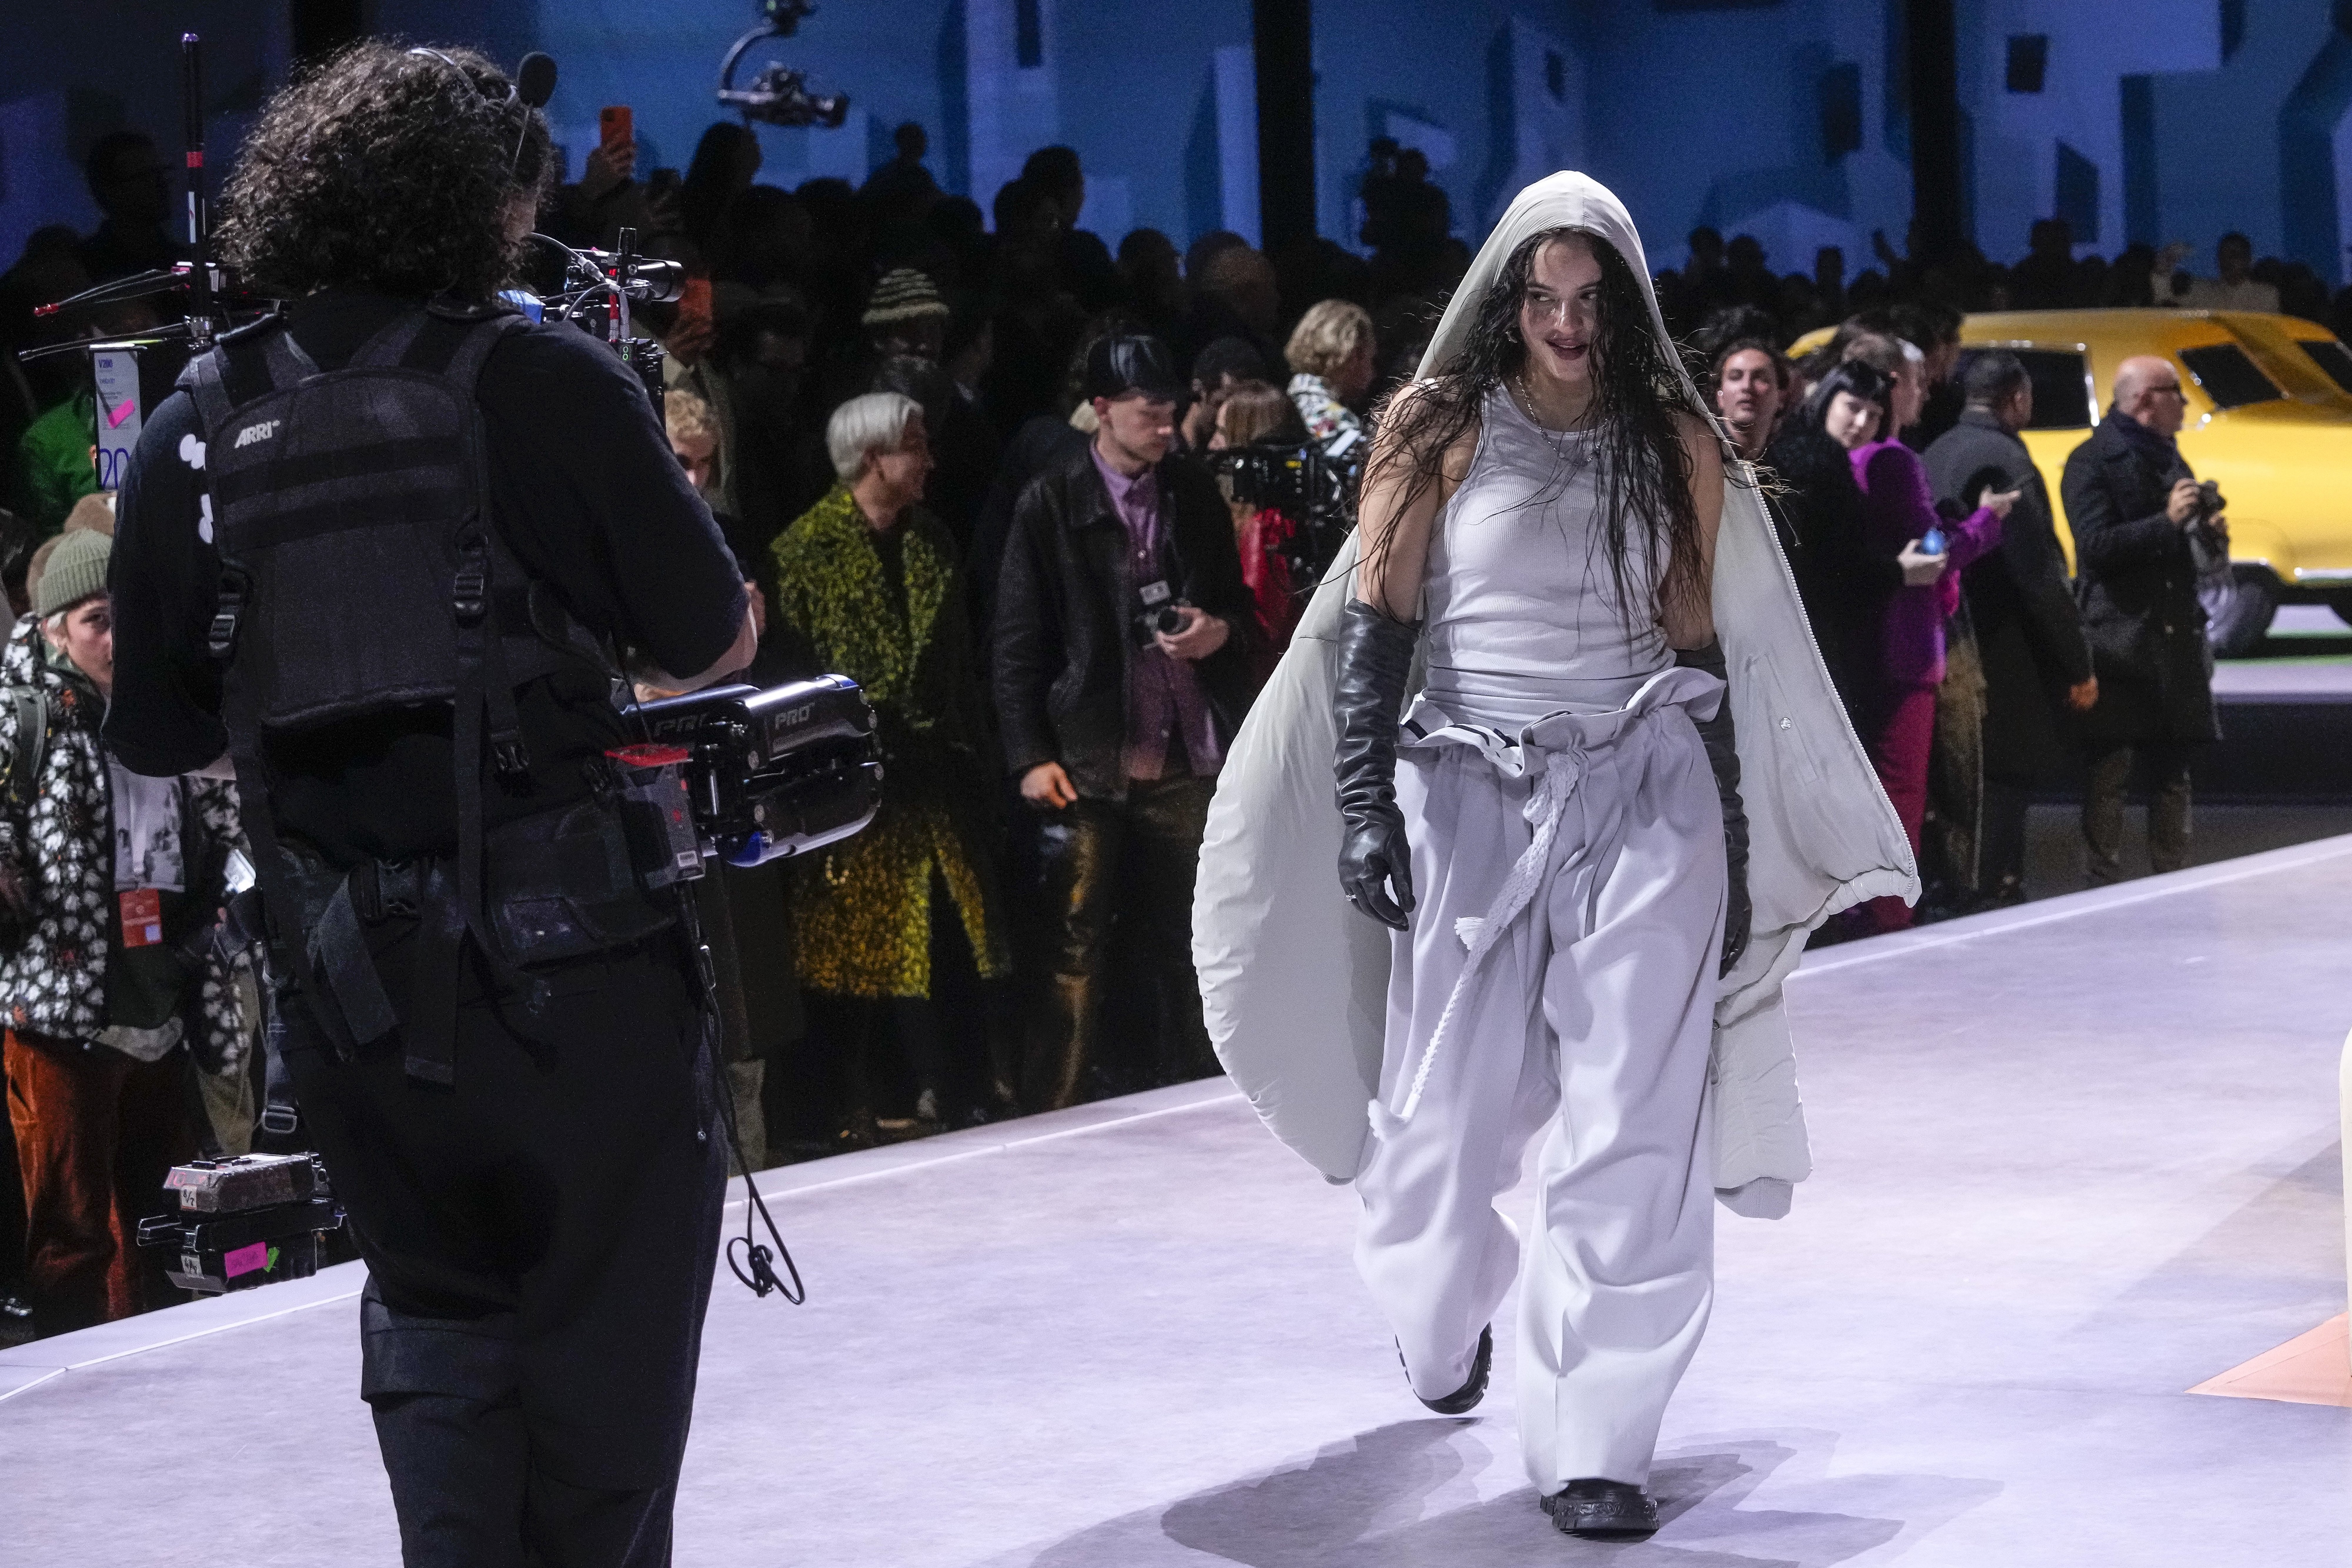 5 Key Takeaways From Louis Vuitton Men's Fall-Winter 2021 Show